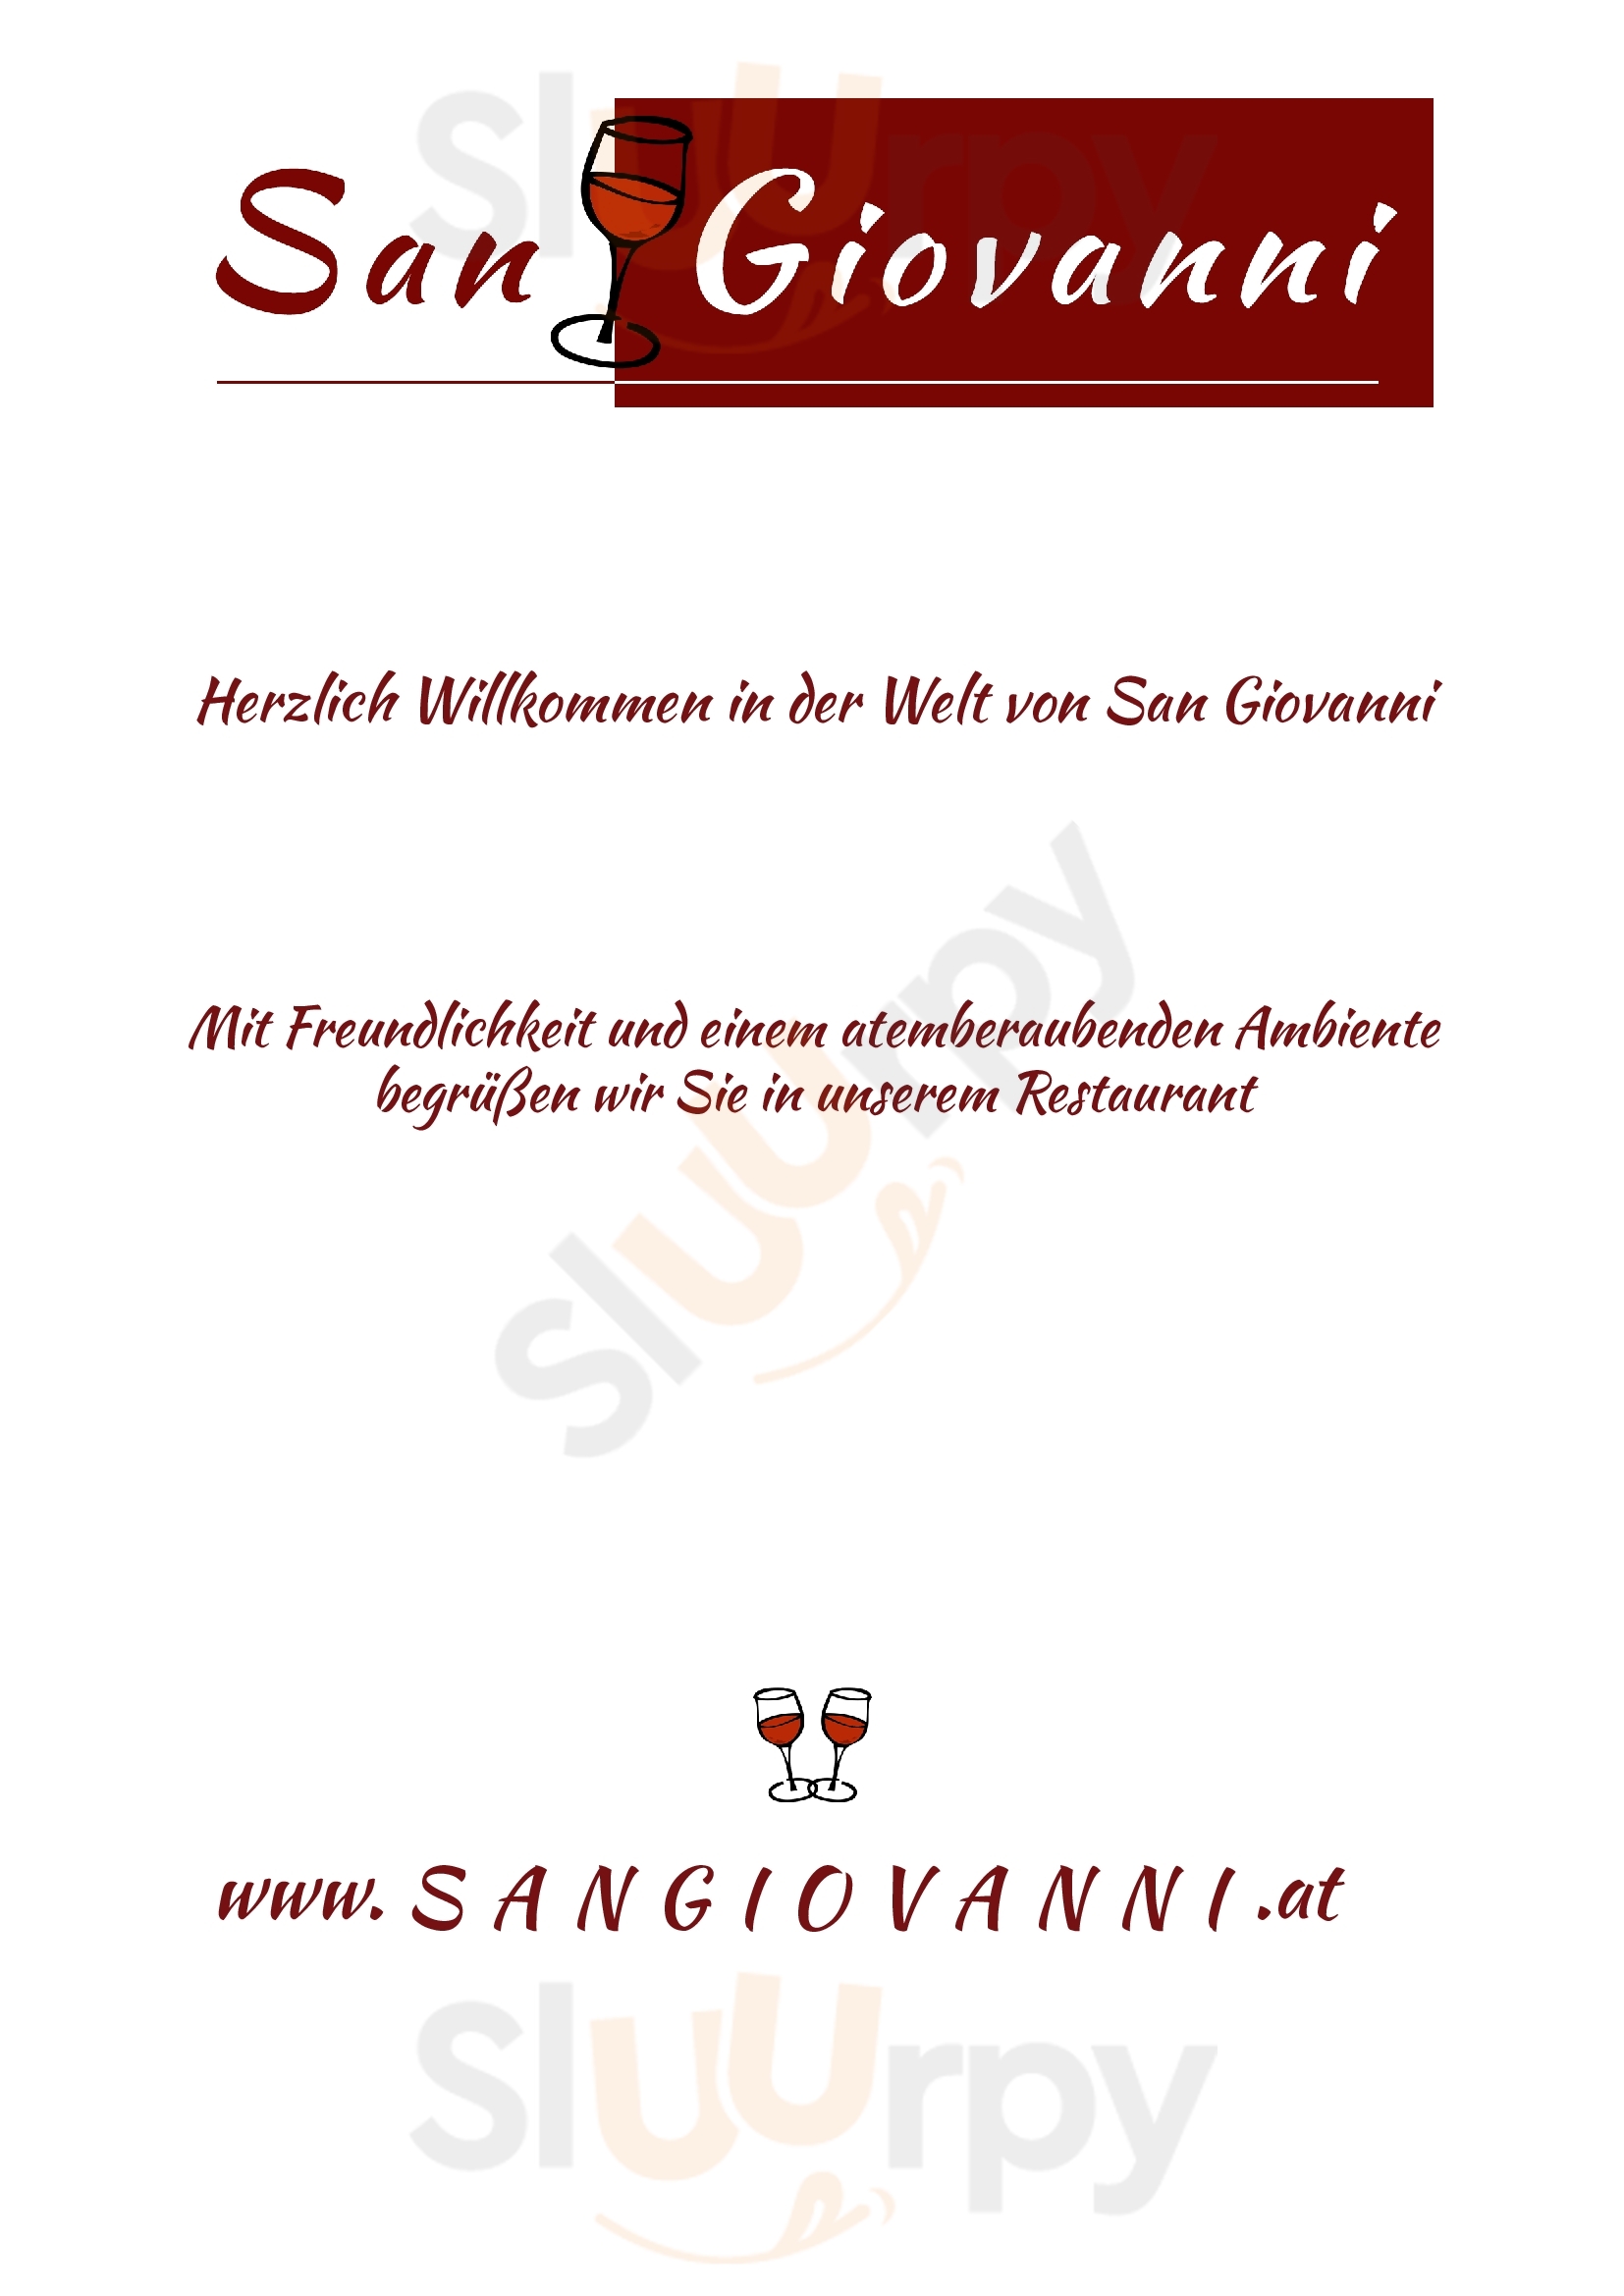 San Giovanni Wien Menu - 1